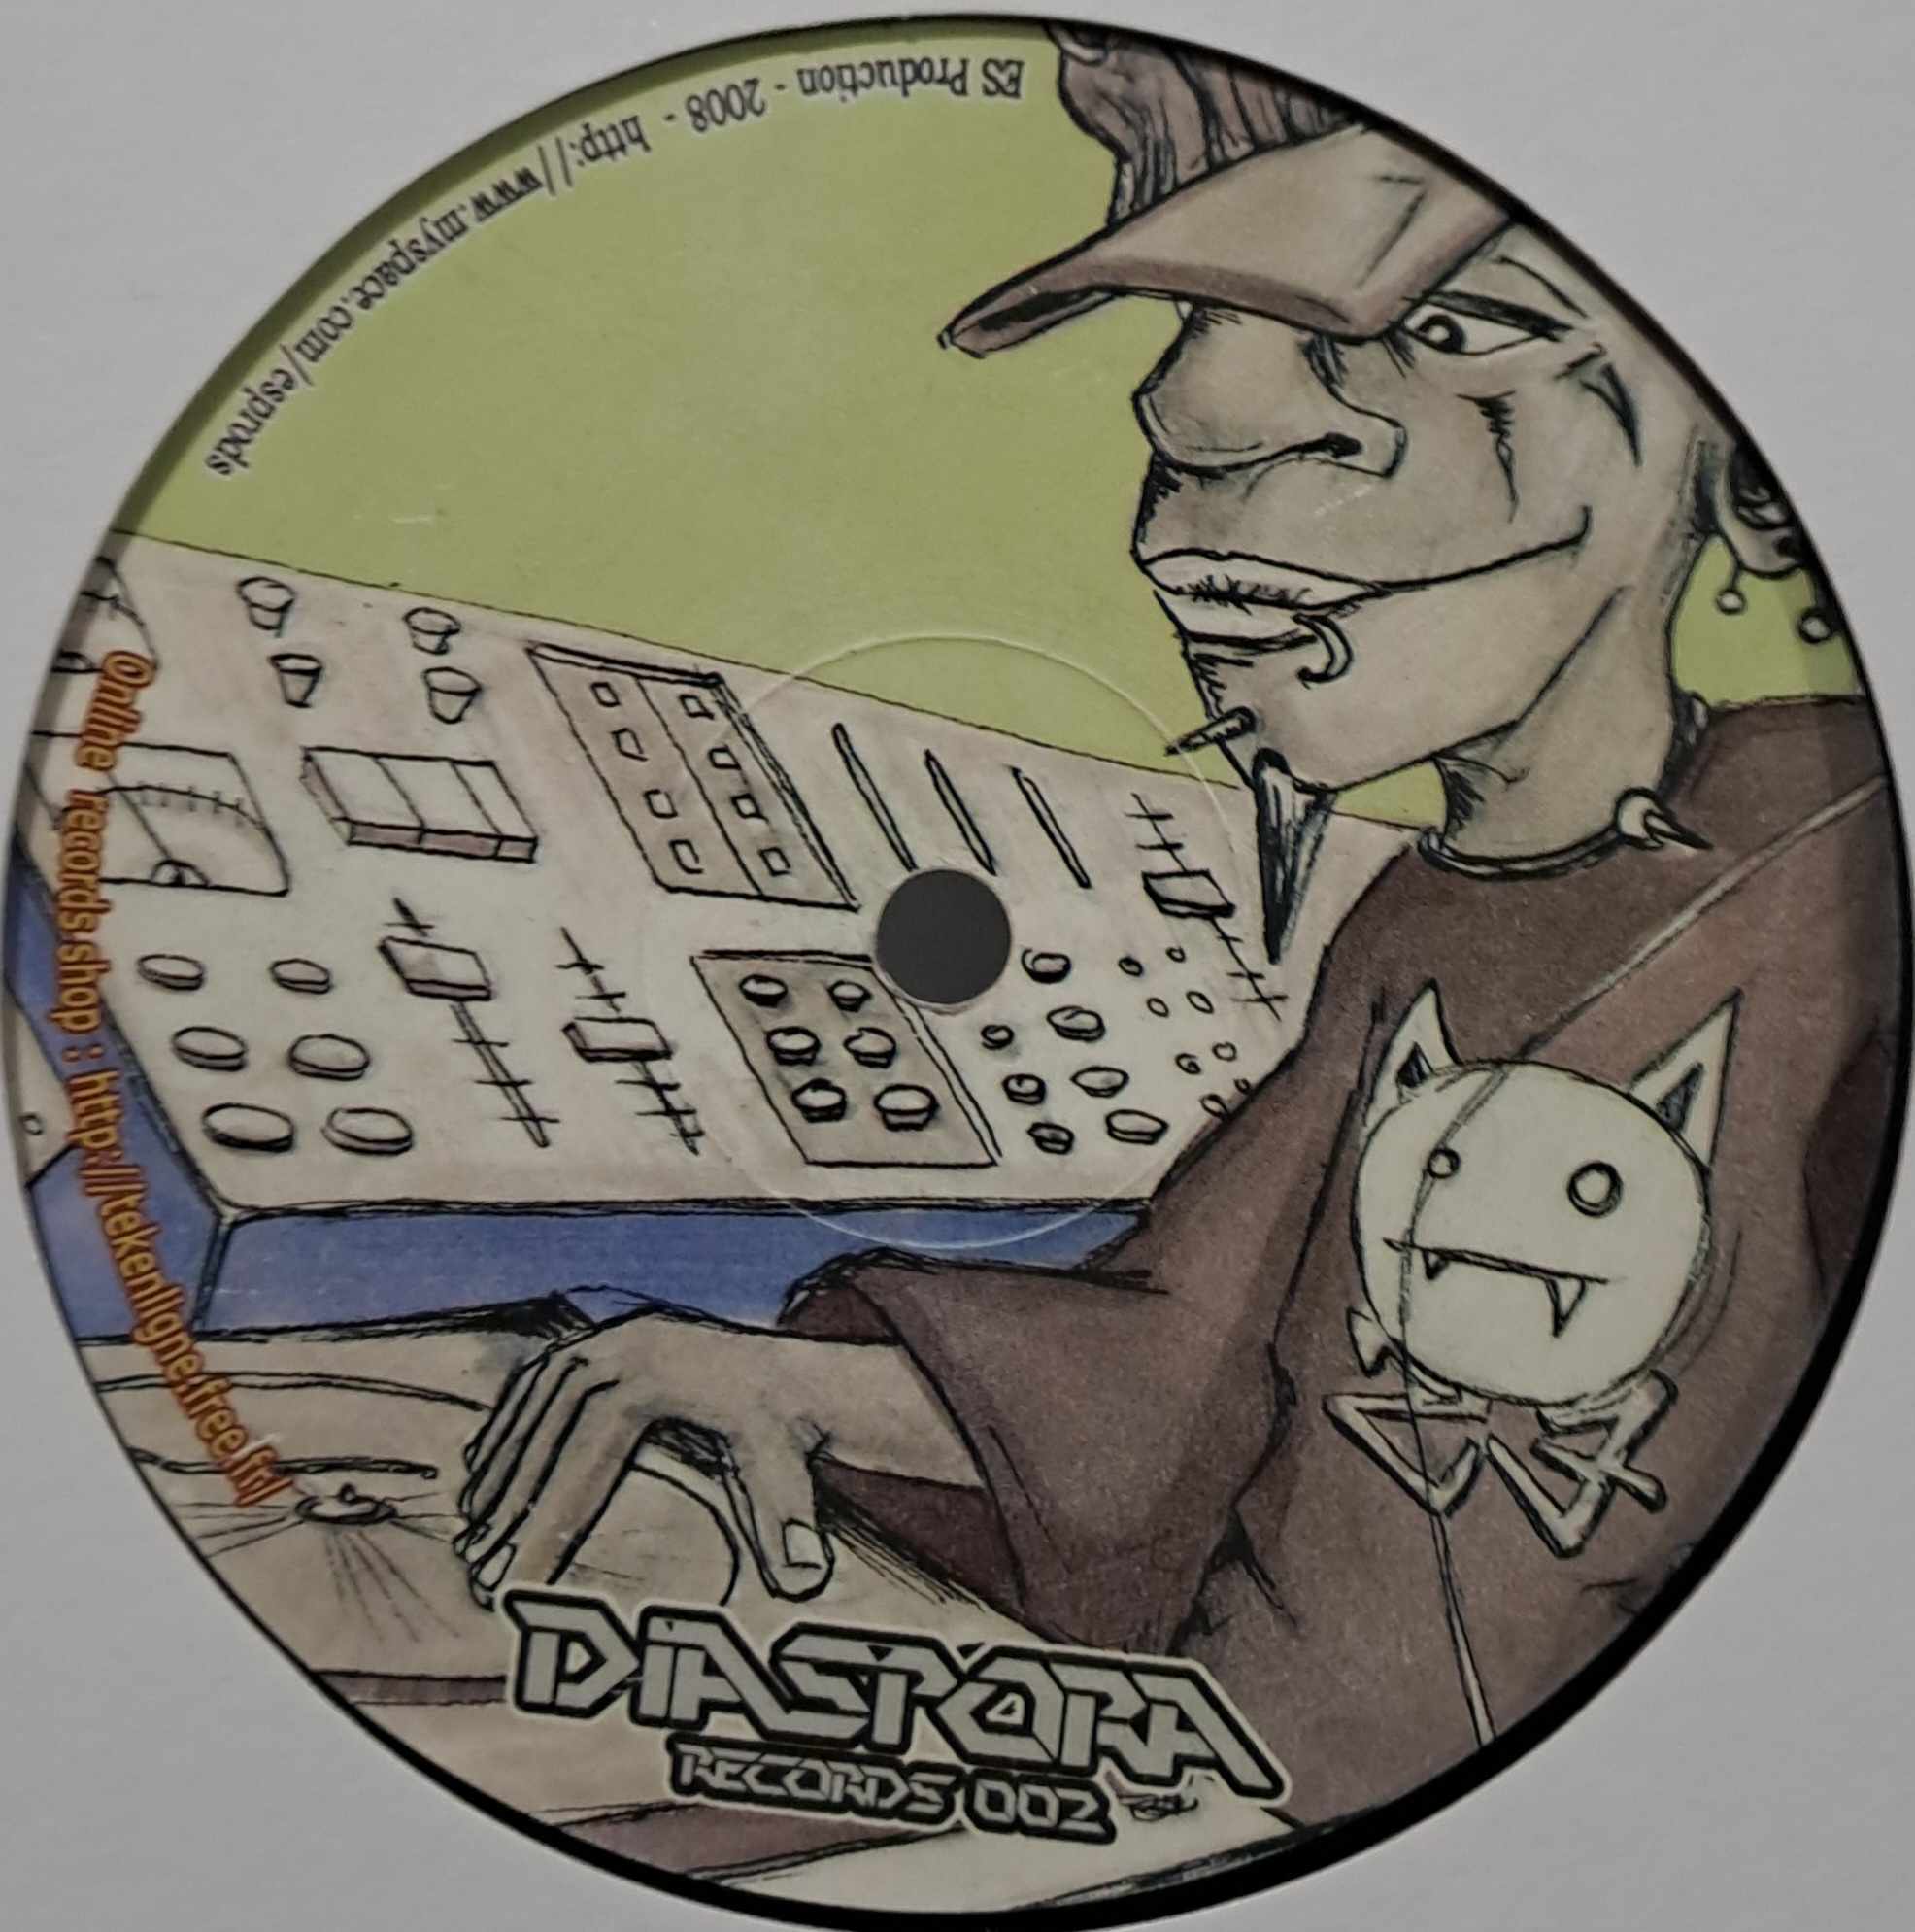 Diaspora 02 - vinyle freetekno